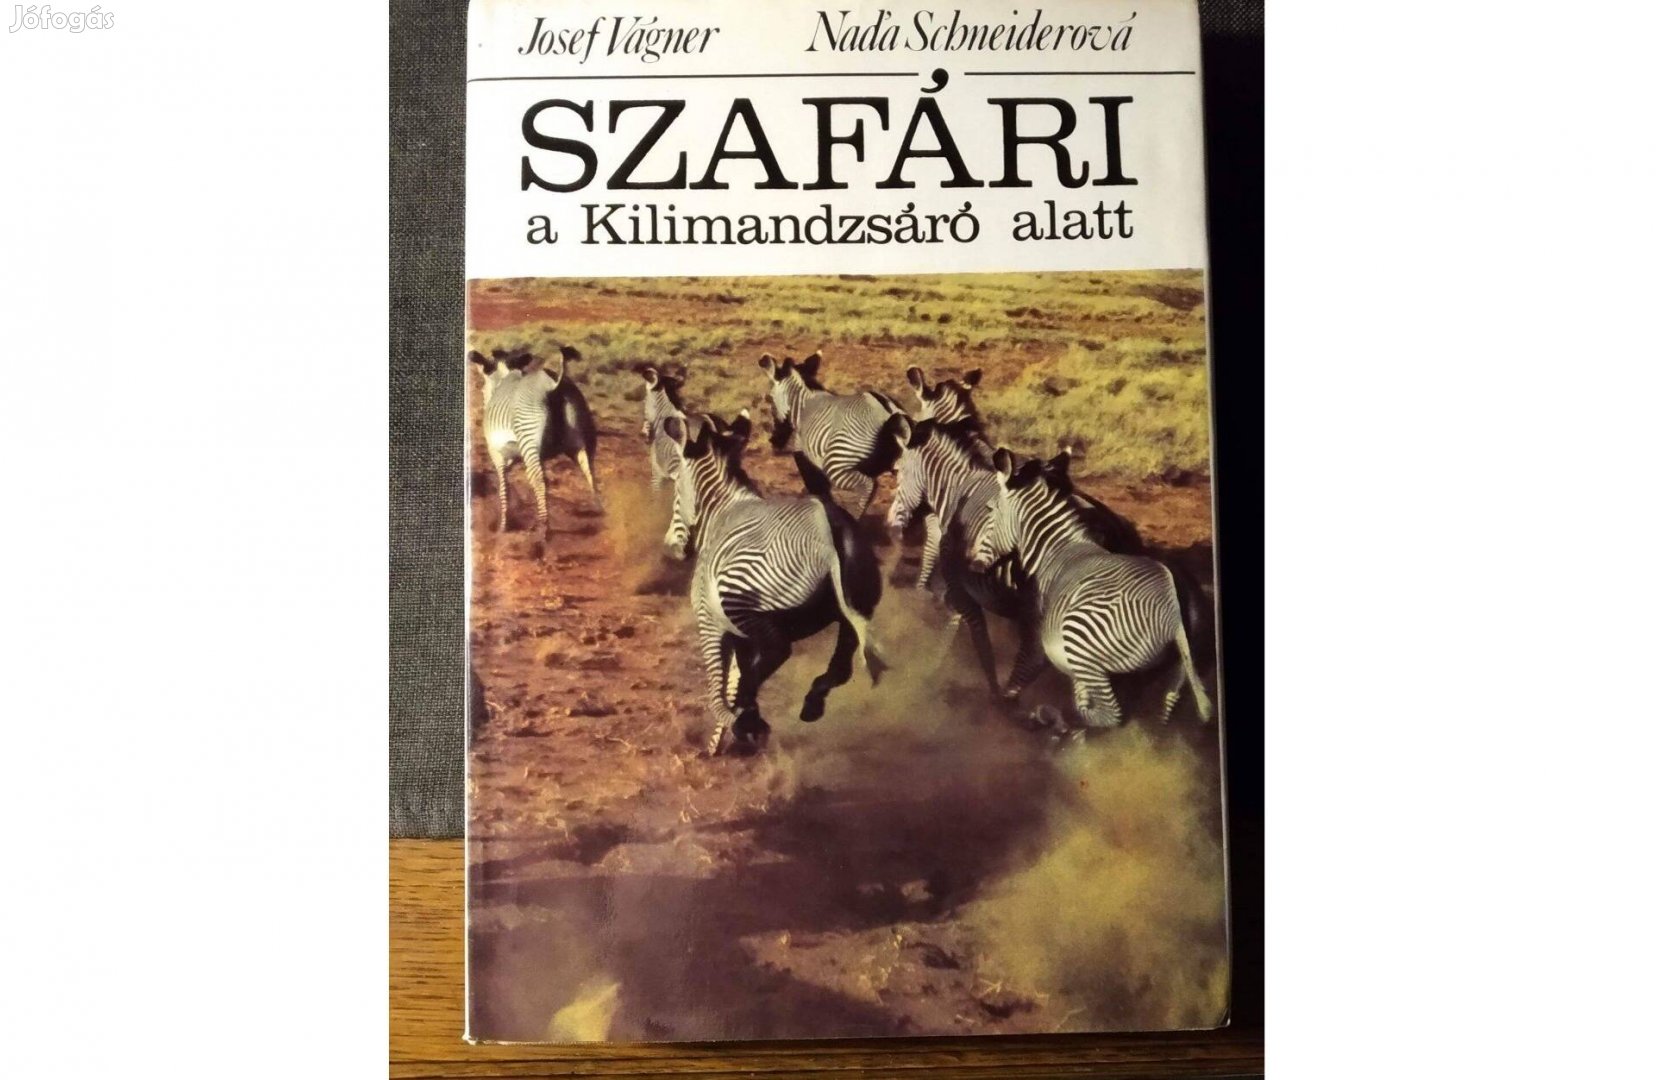 Szafari a Kilimandzsáró alatt Josef Vagner